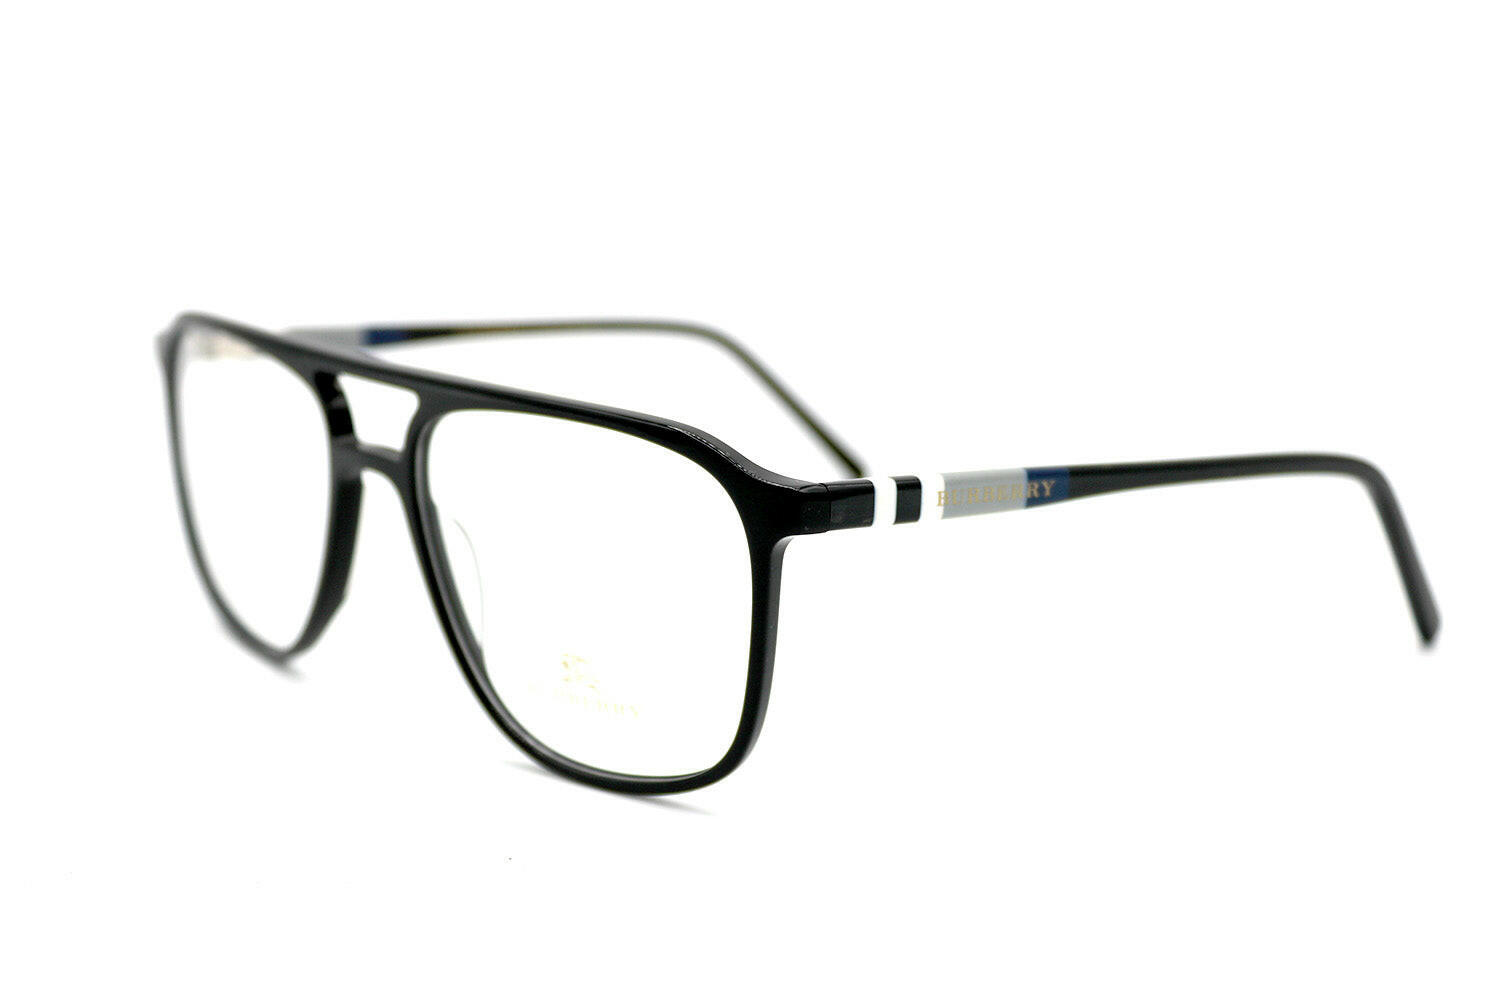 NS Luxury - 96048 - Black - Eyeglasses